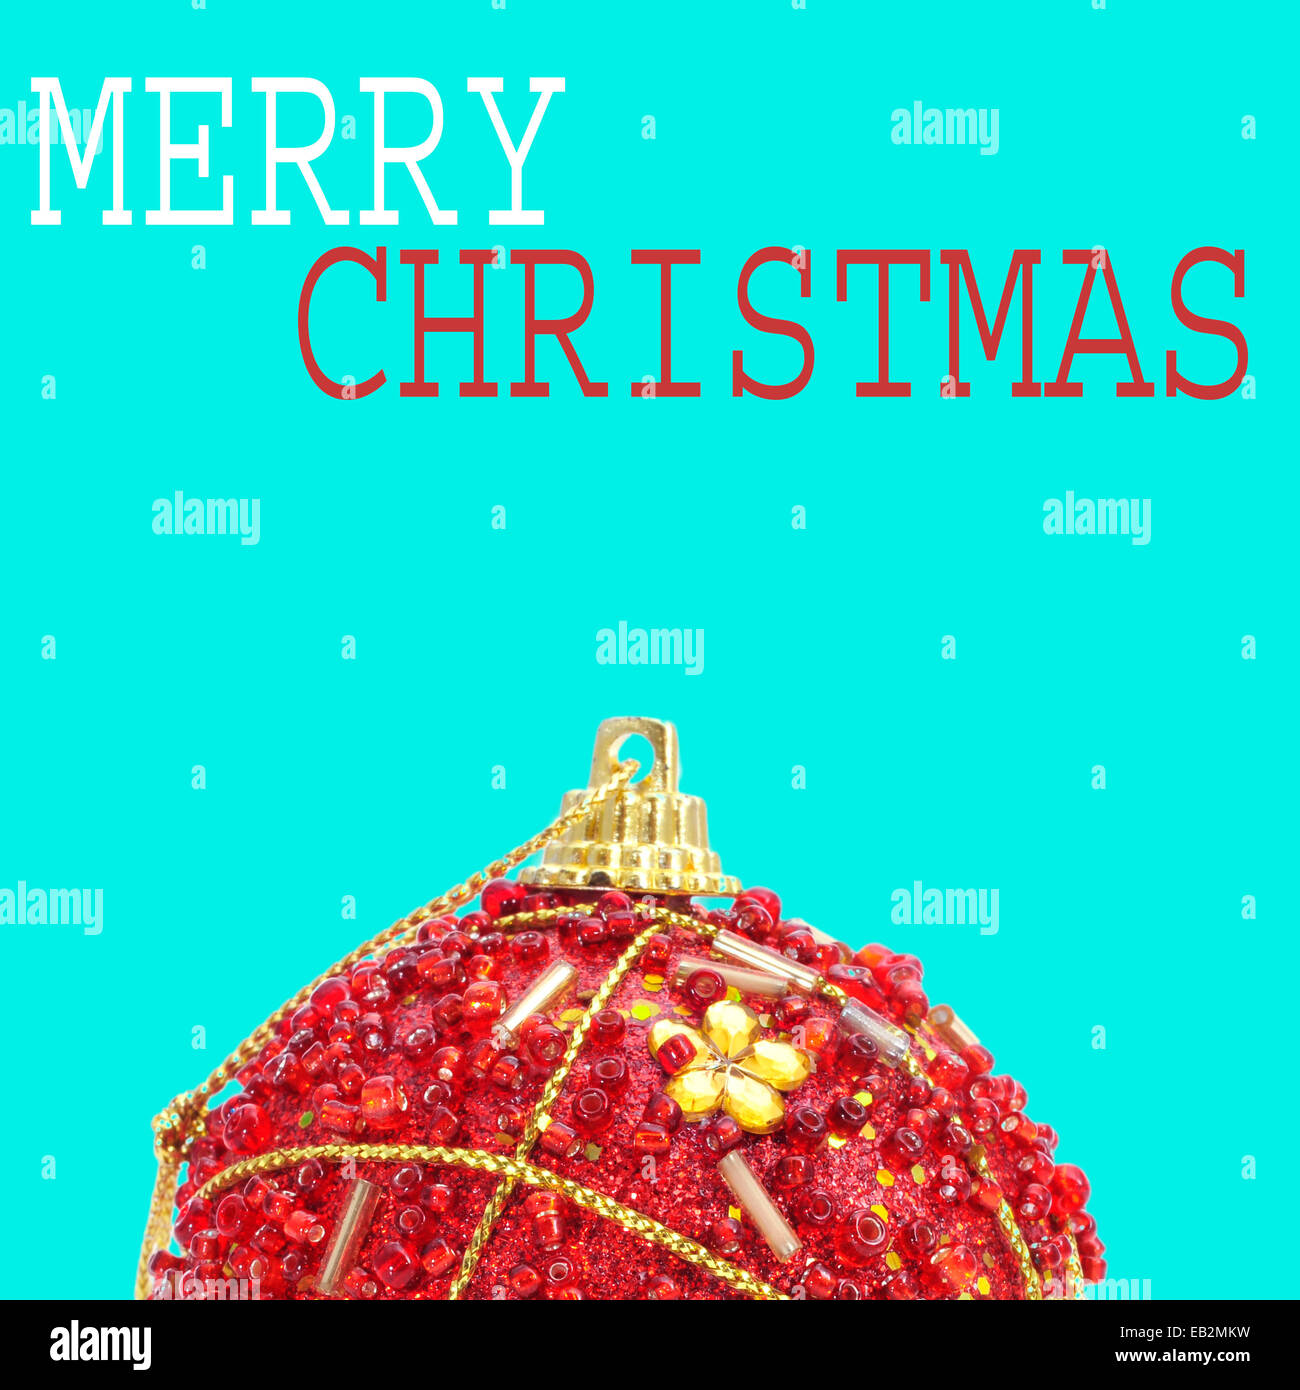 eine verzierte rote Weihnachtskugel und den Satz Frohe Weihnachten auf blauem Hintergrund mit einem Pop-Art-Stil Stockfoto